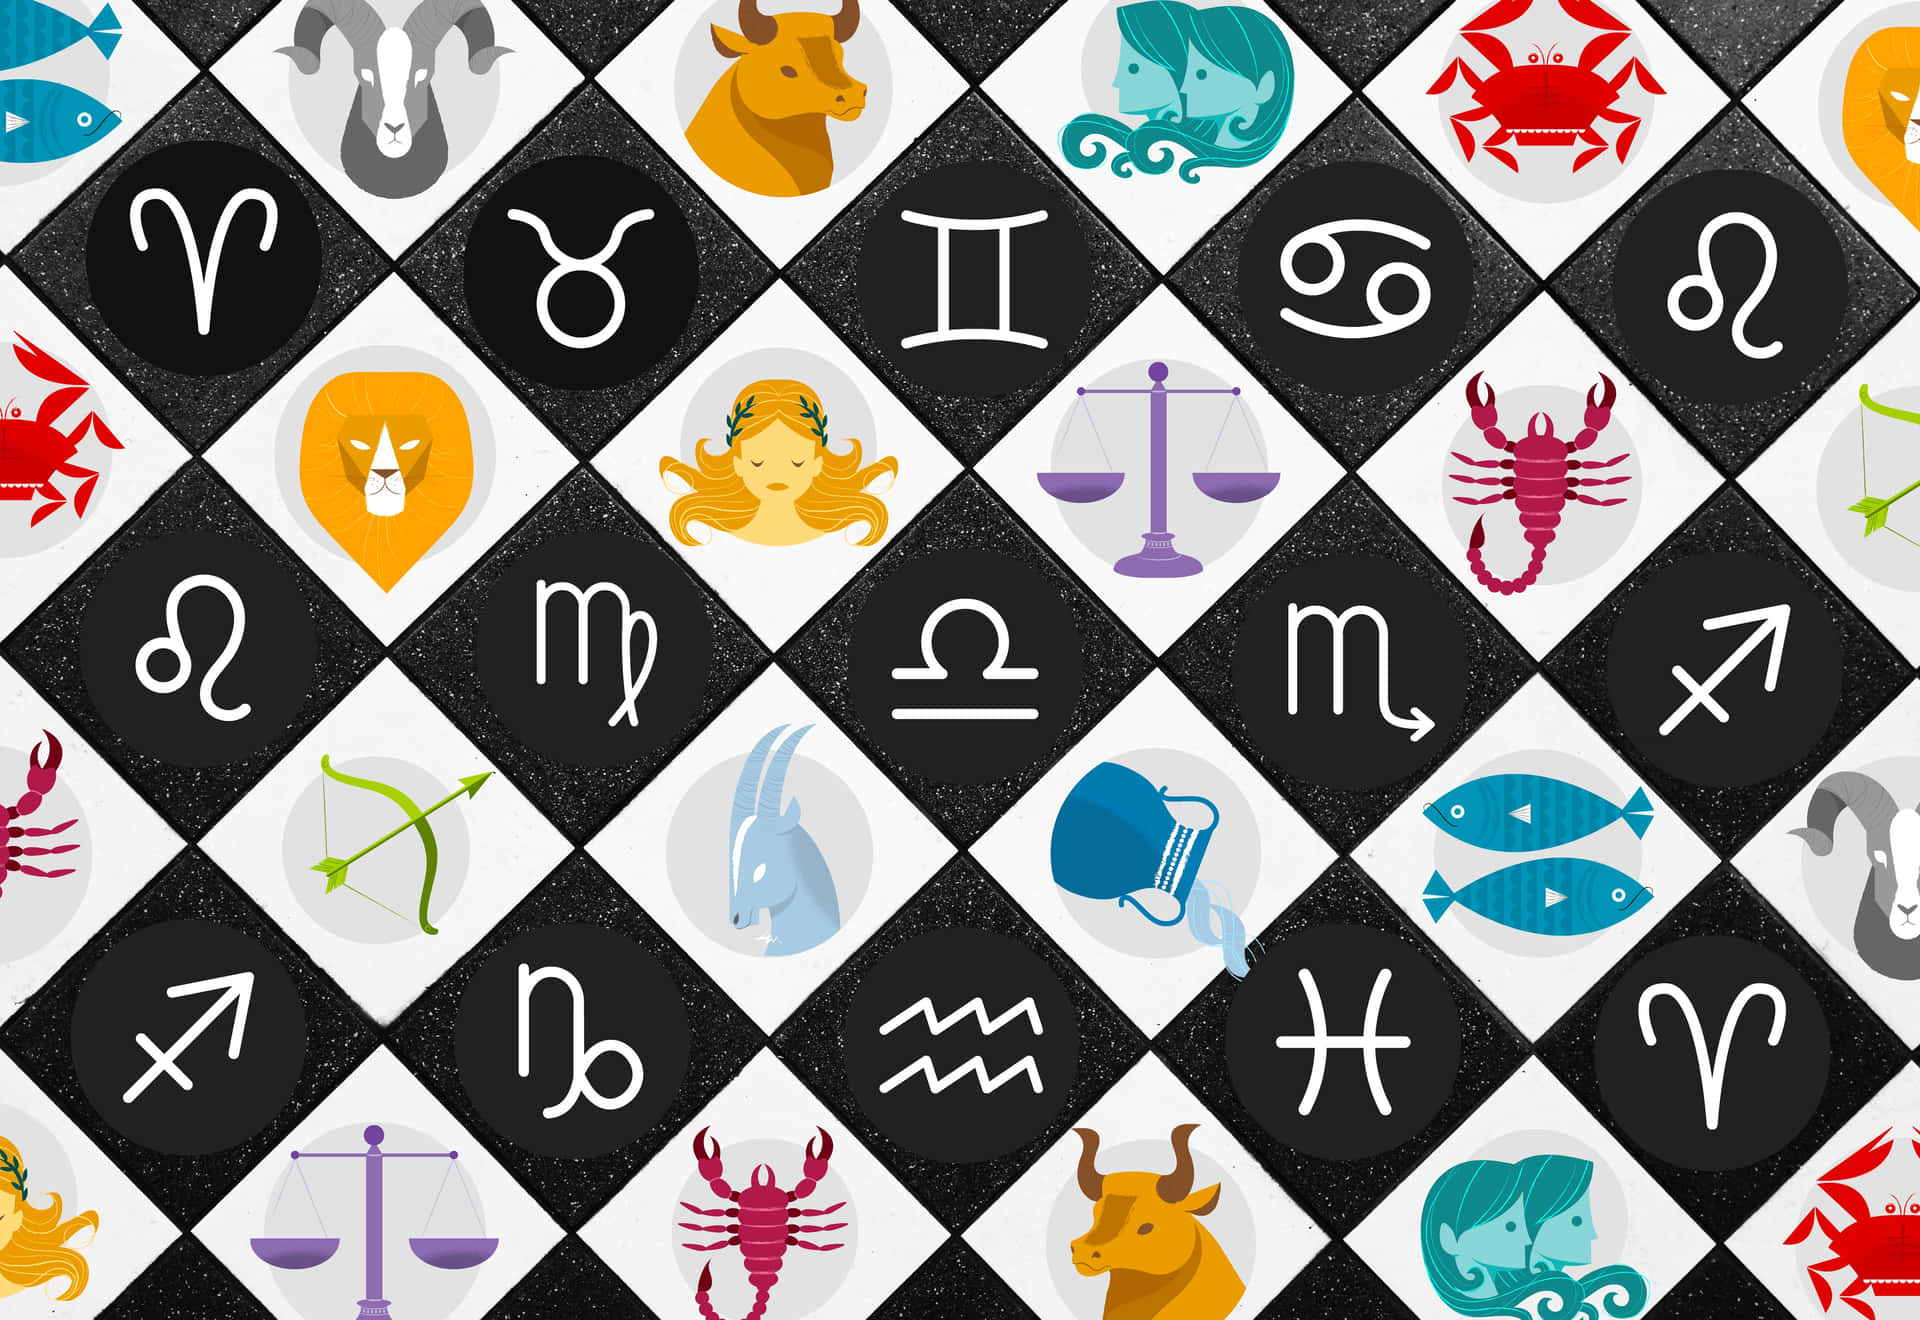 Astrology Wallpaper